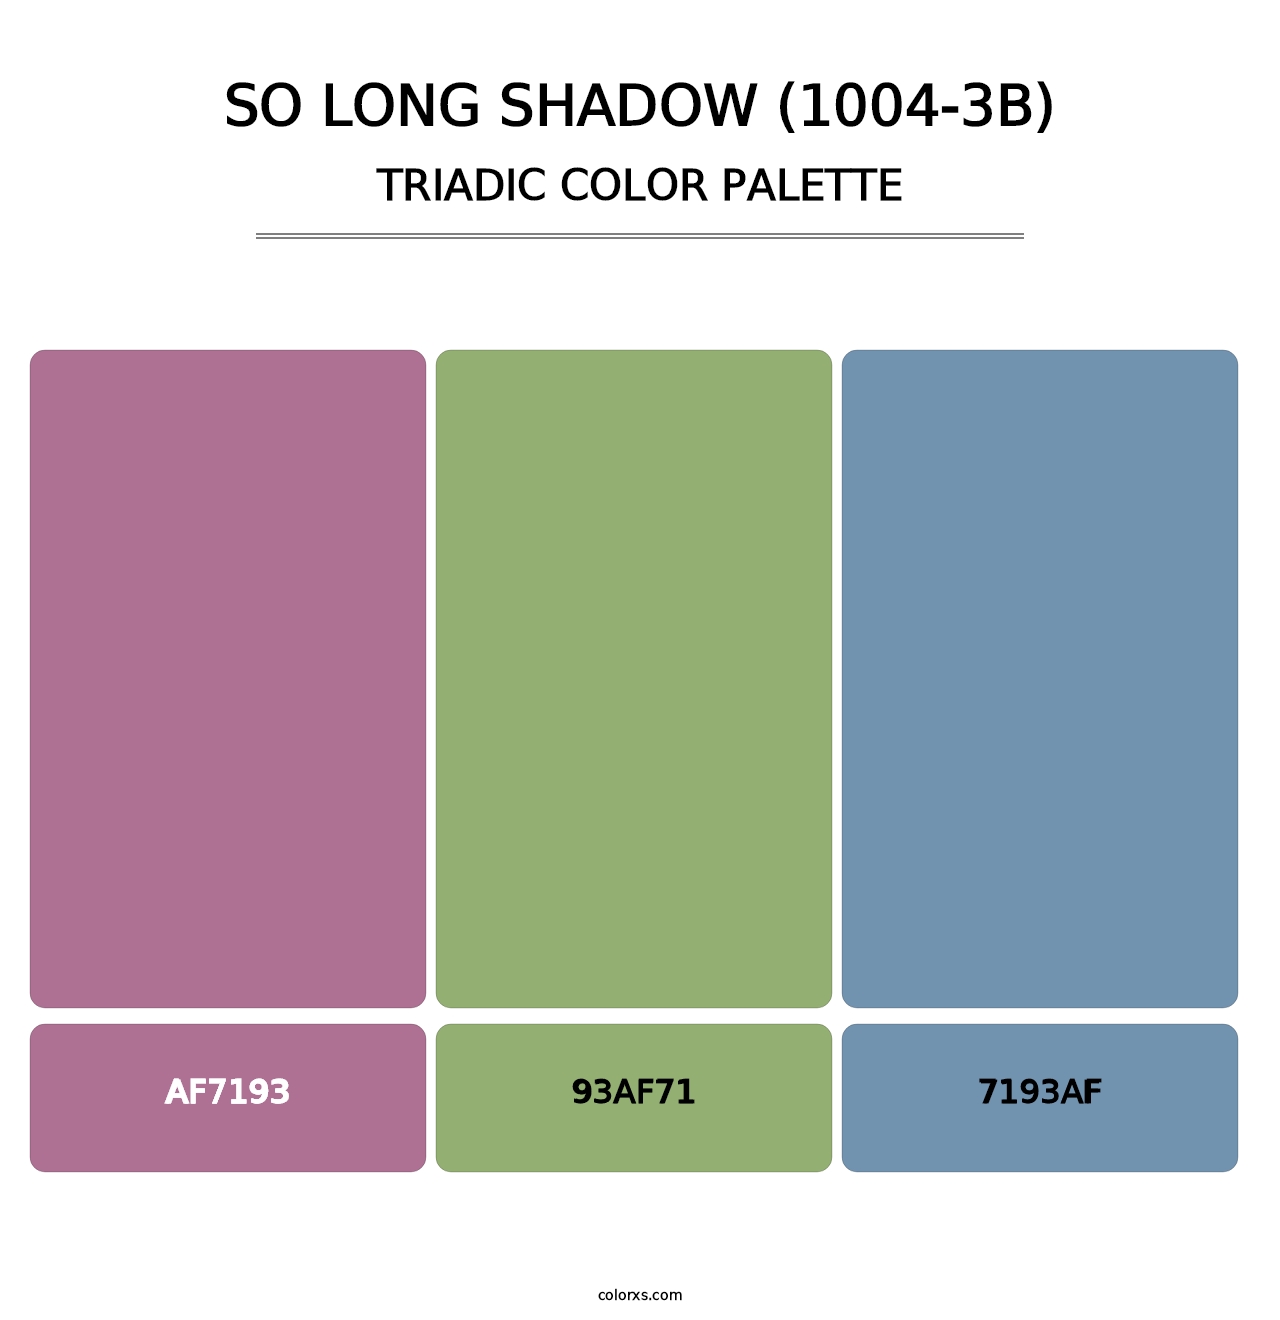 So Long Shadow (1004-3B) - Triadic Color Palette